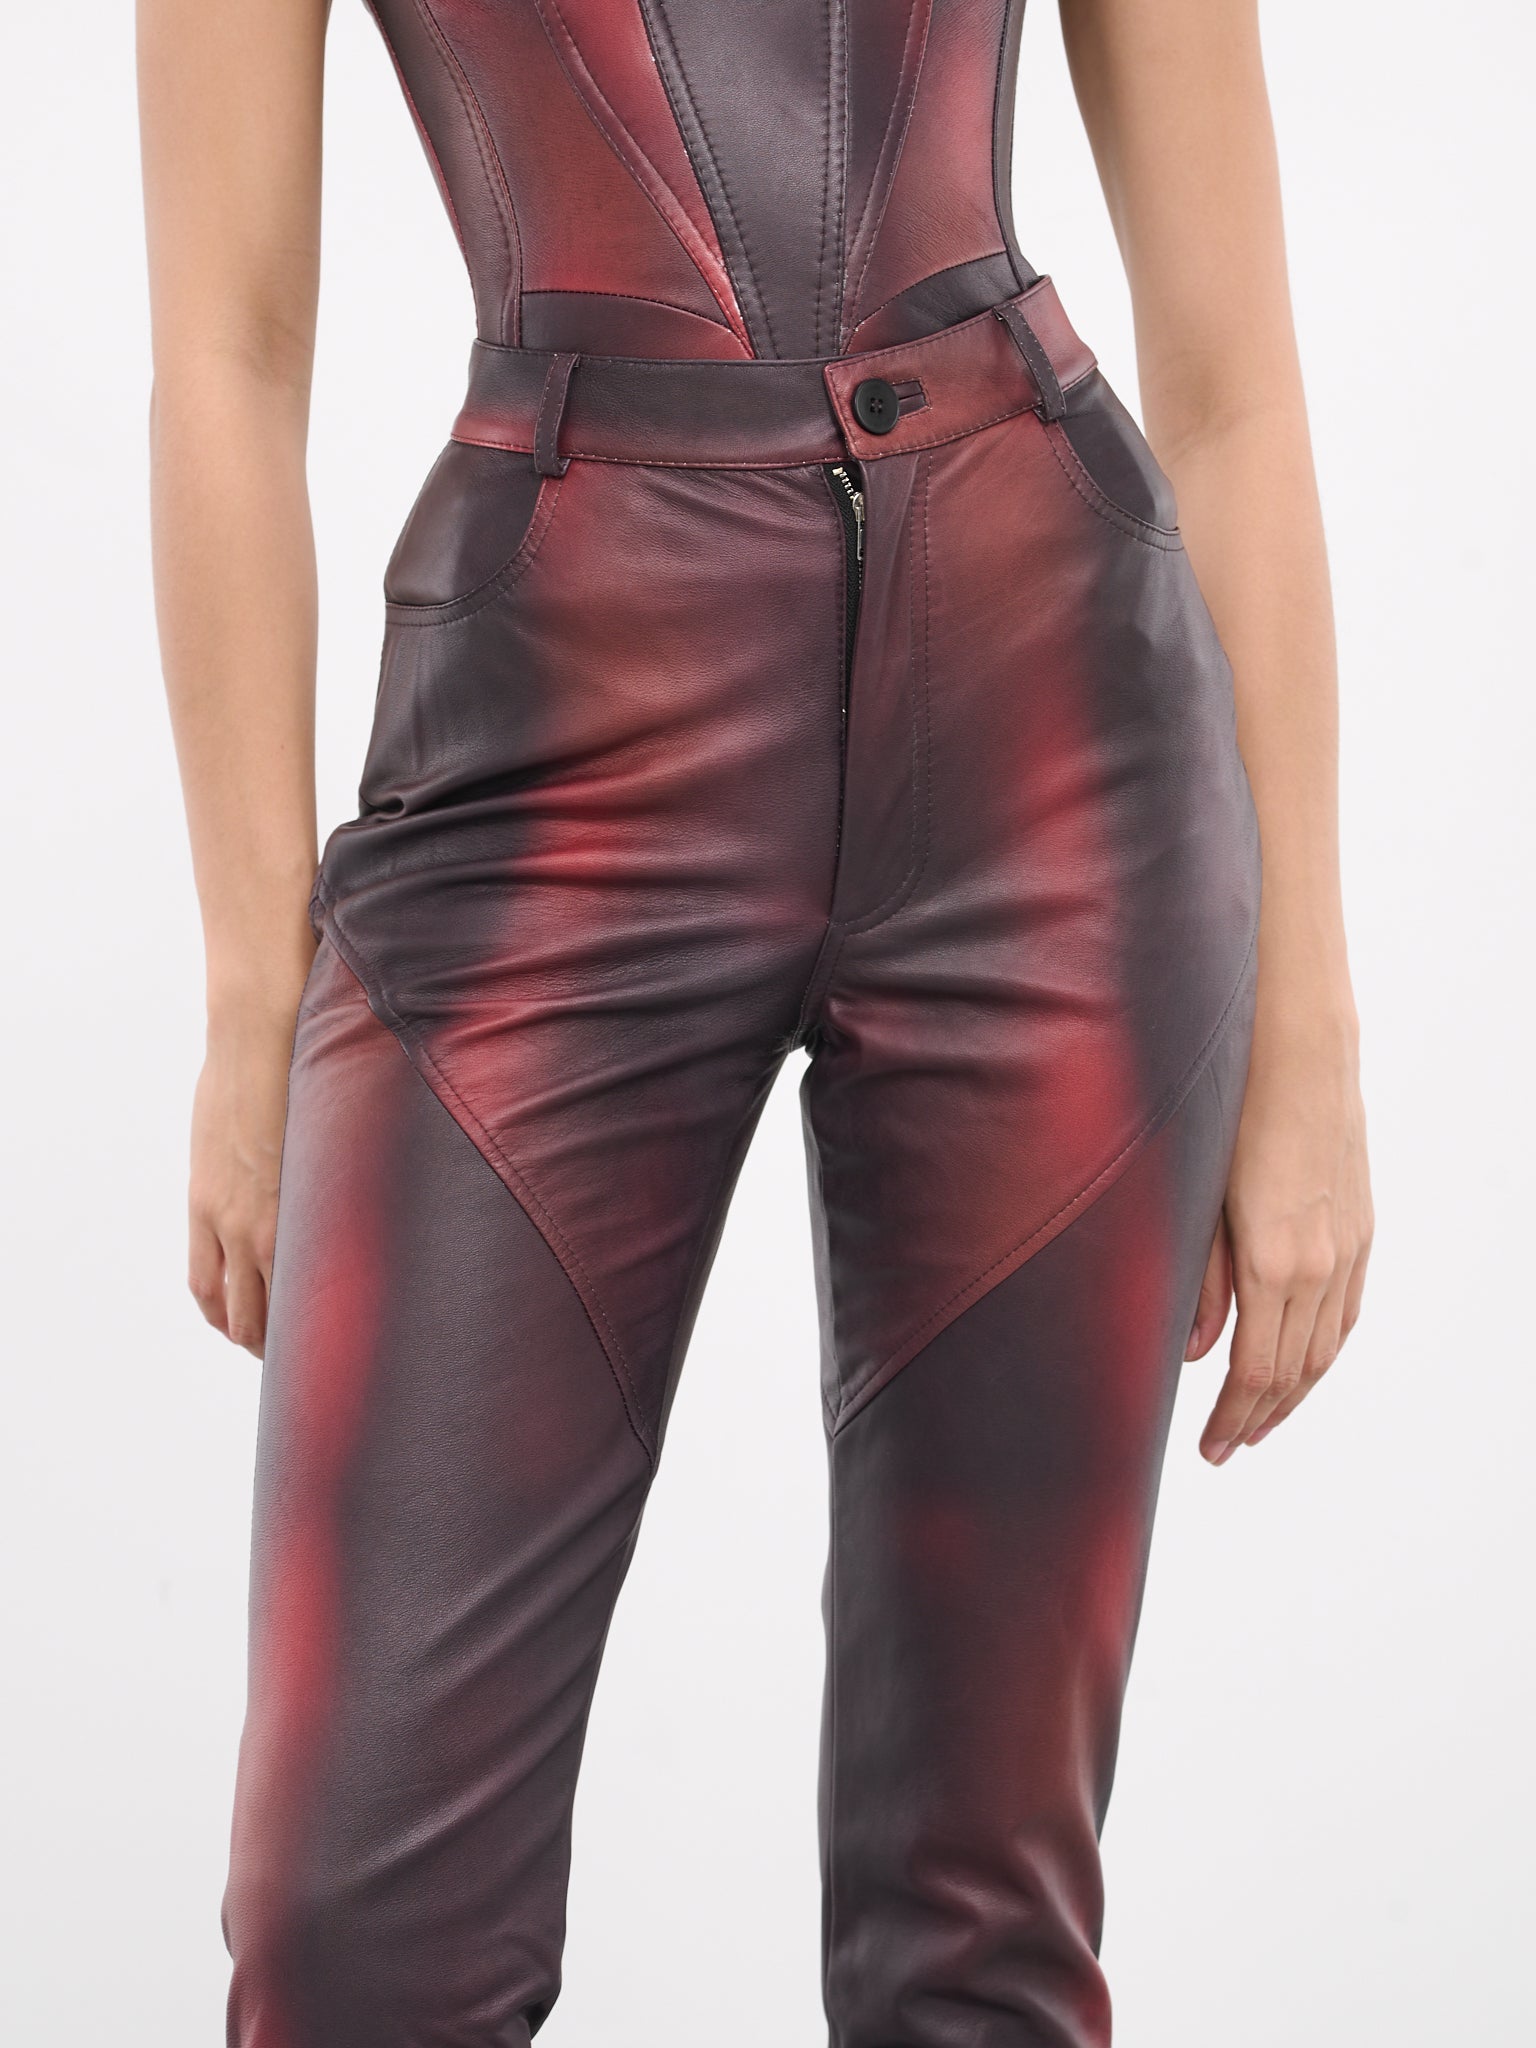 Printed Leather Pants (PANT-PRINT-03-DARK-PRINTED-PUR)